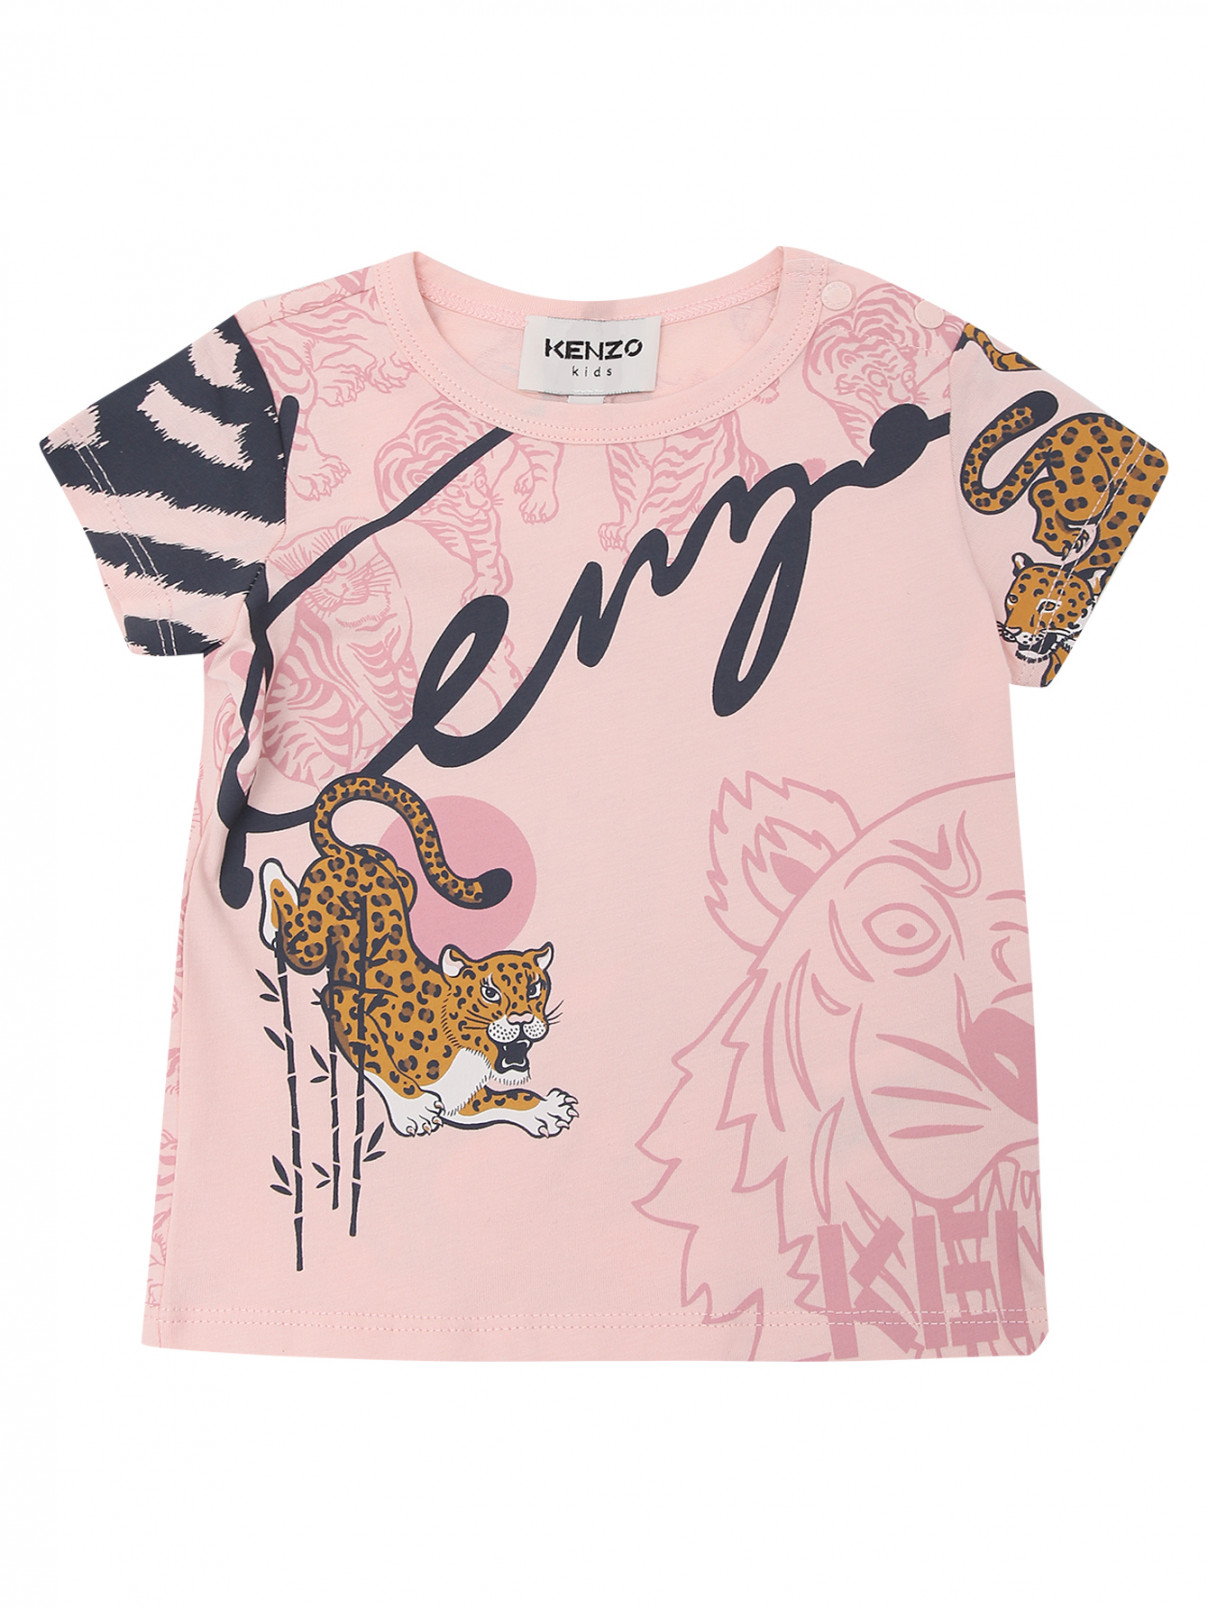 Хлопковая футболка с принтом Kenzo  –  Общий вид  – Цвет:  Розовый